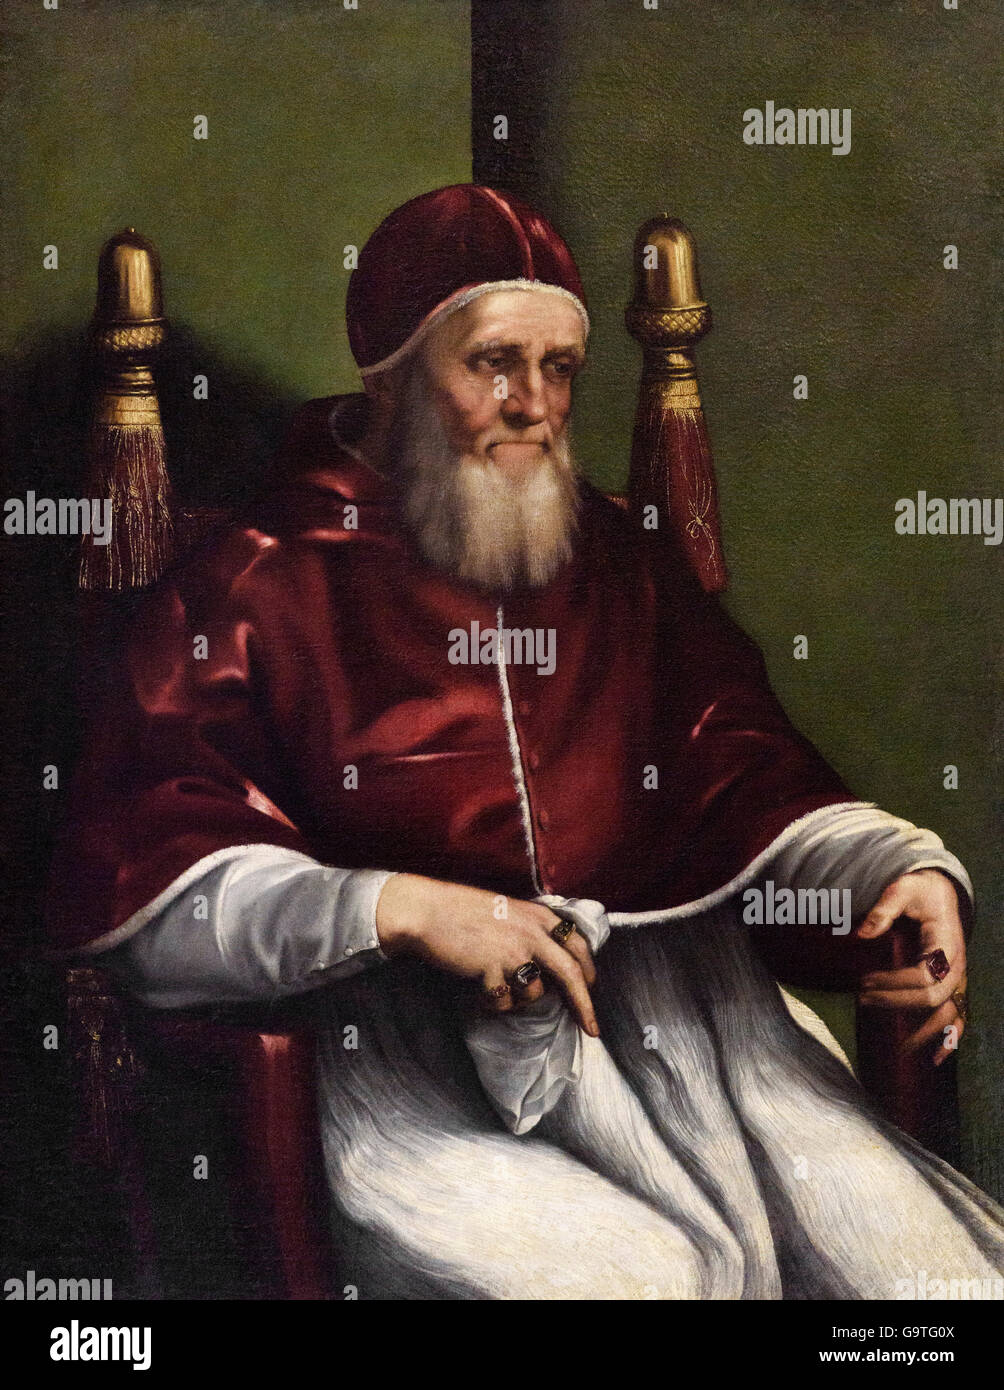 Copia dopo Raffaello, ritratto di papa Giulio II (1443-1513), fine XVI C. Foto Stock